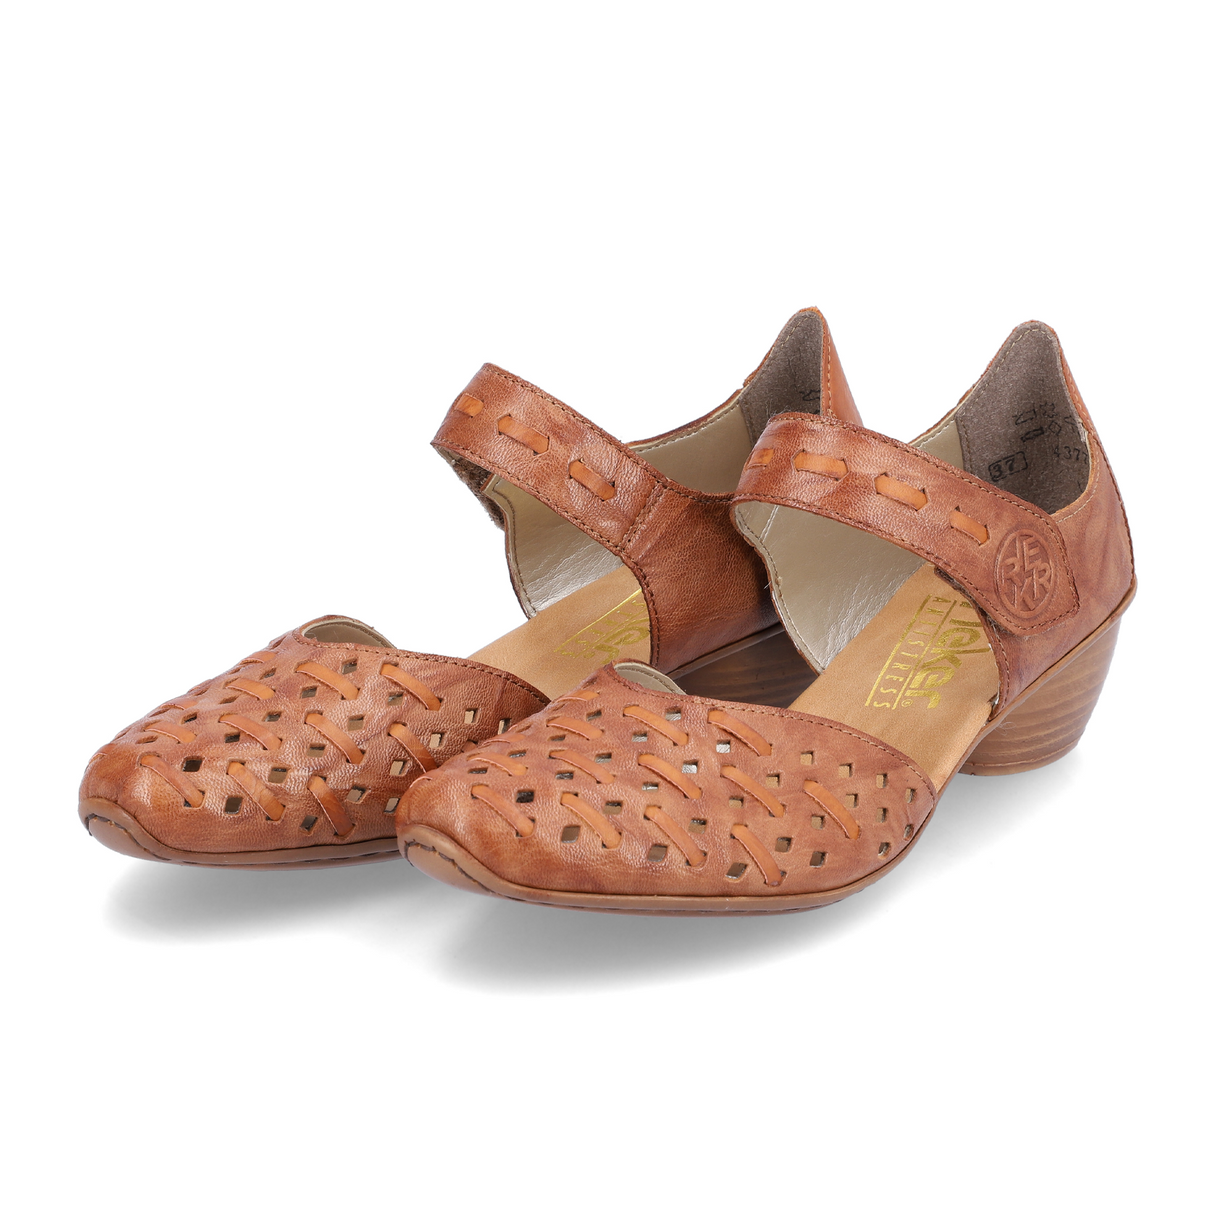 Rieker Mirjam 43770-22 Heeled Sandal (Women) - Cayenne Dress-Casual - Heels - The Heel Shoe Fitters